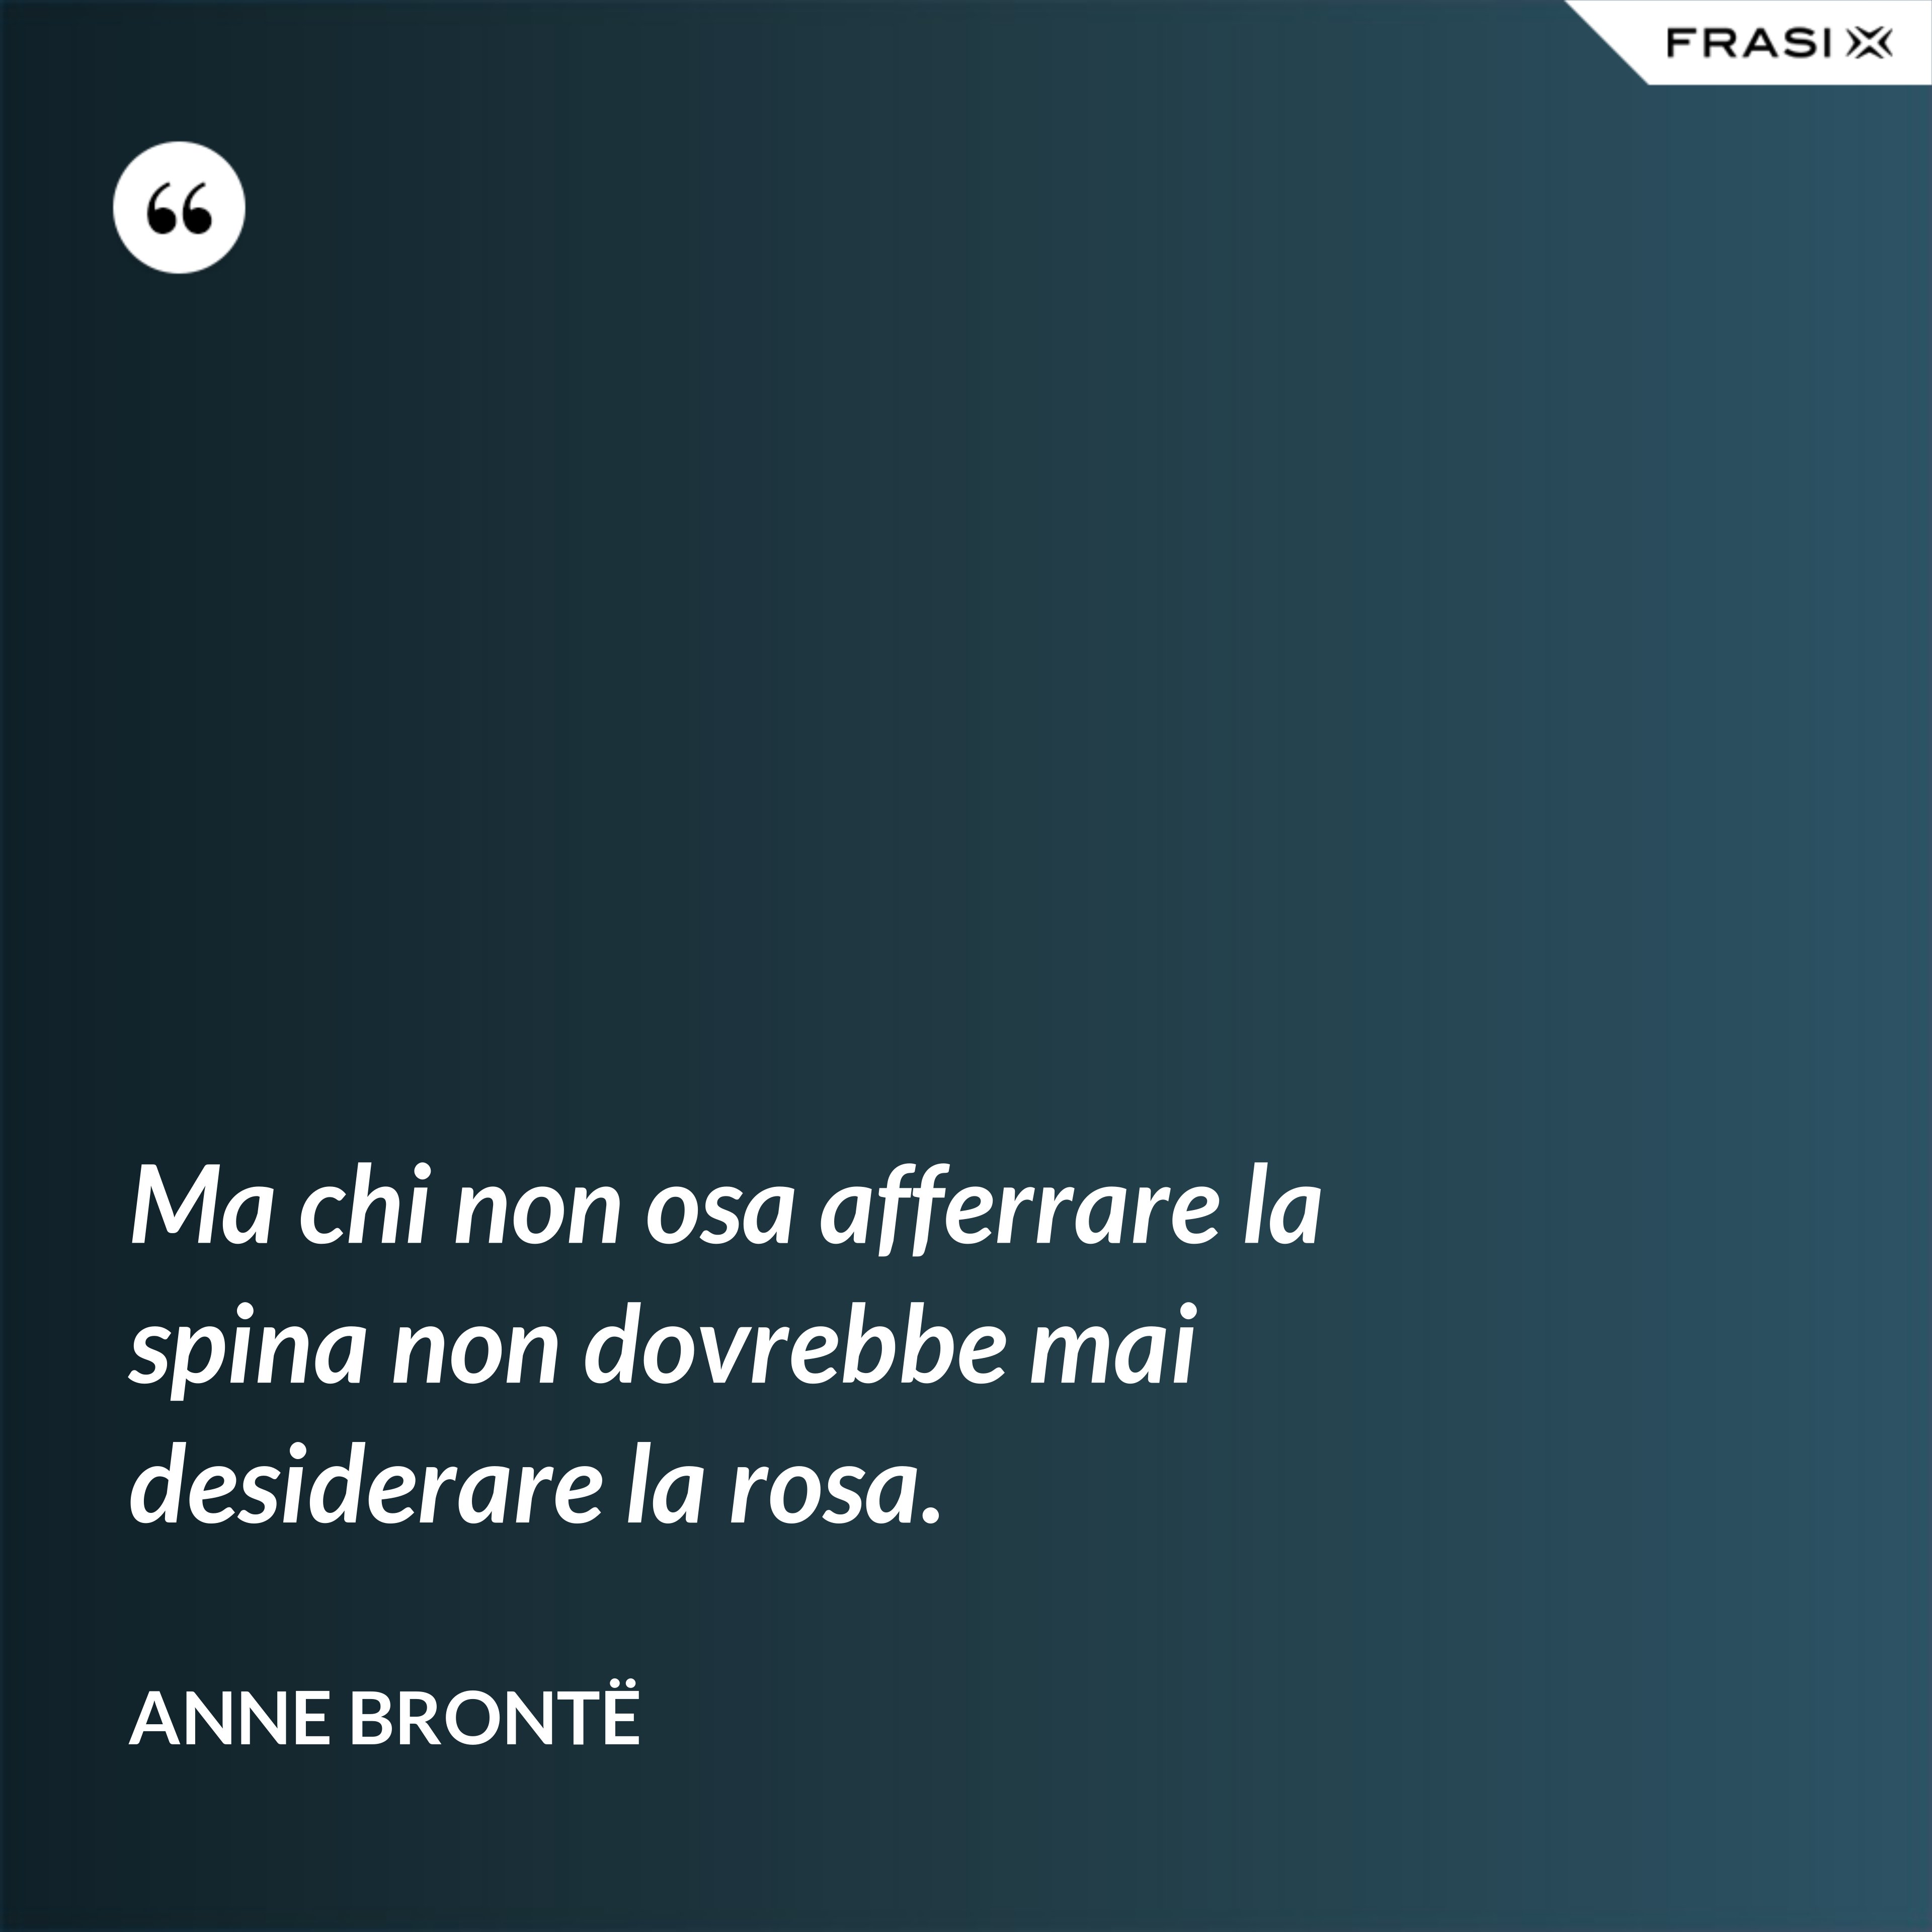 Ma chi non osa afferrare la spina non dovrebbe mai desiderare la rosa. - Anne Brontë